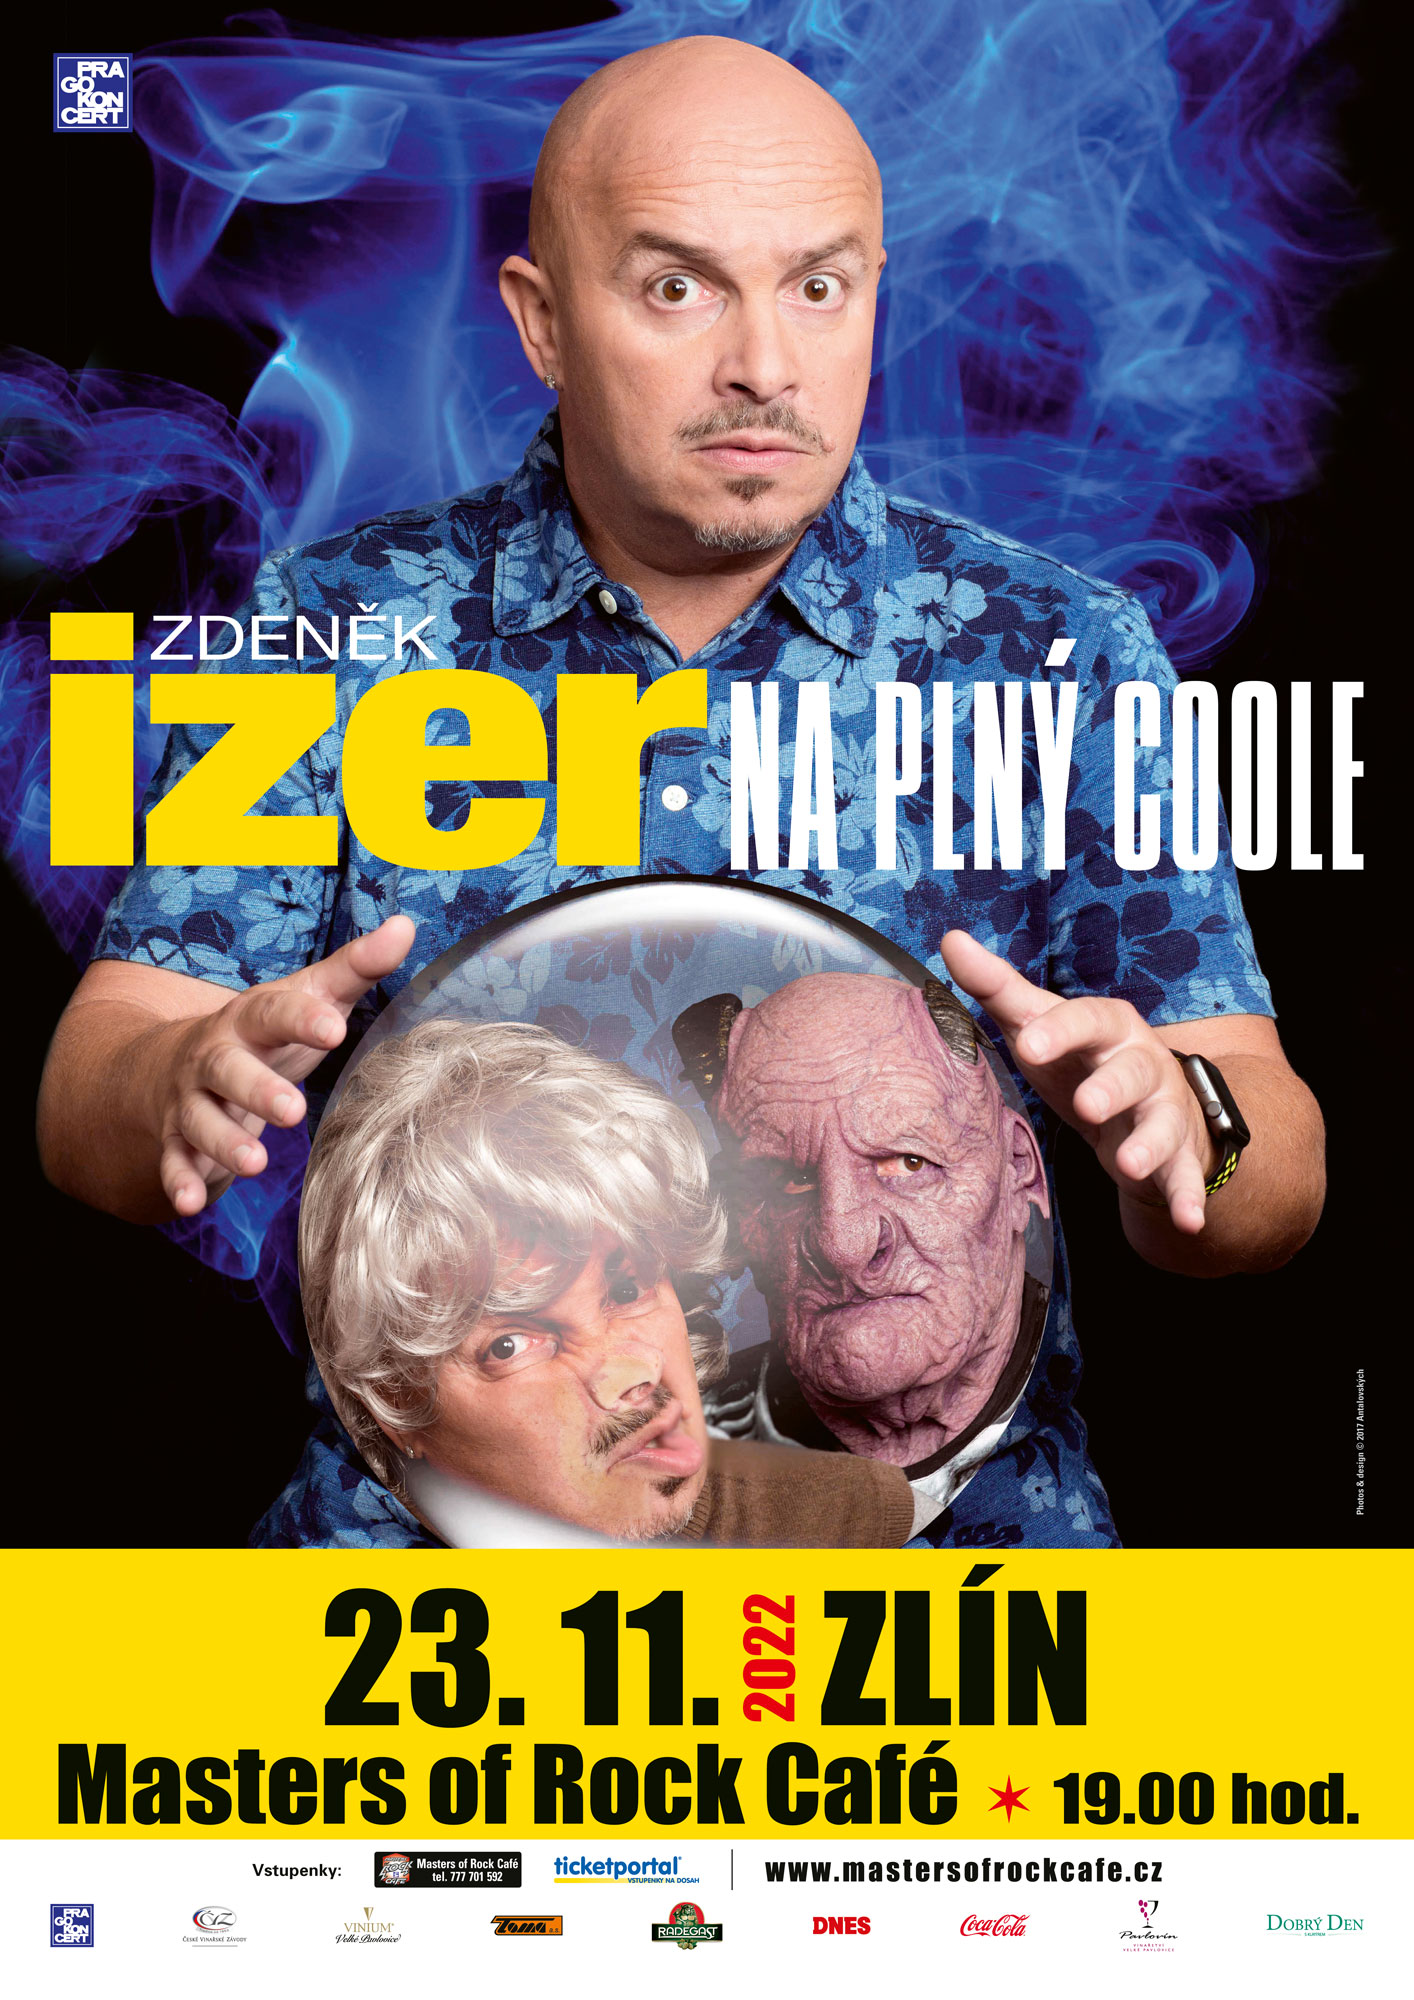 Zdeněk Izer - Na plný Coole 2022